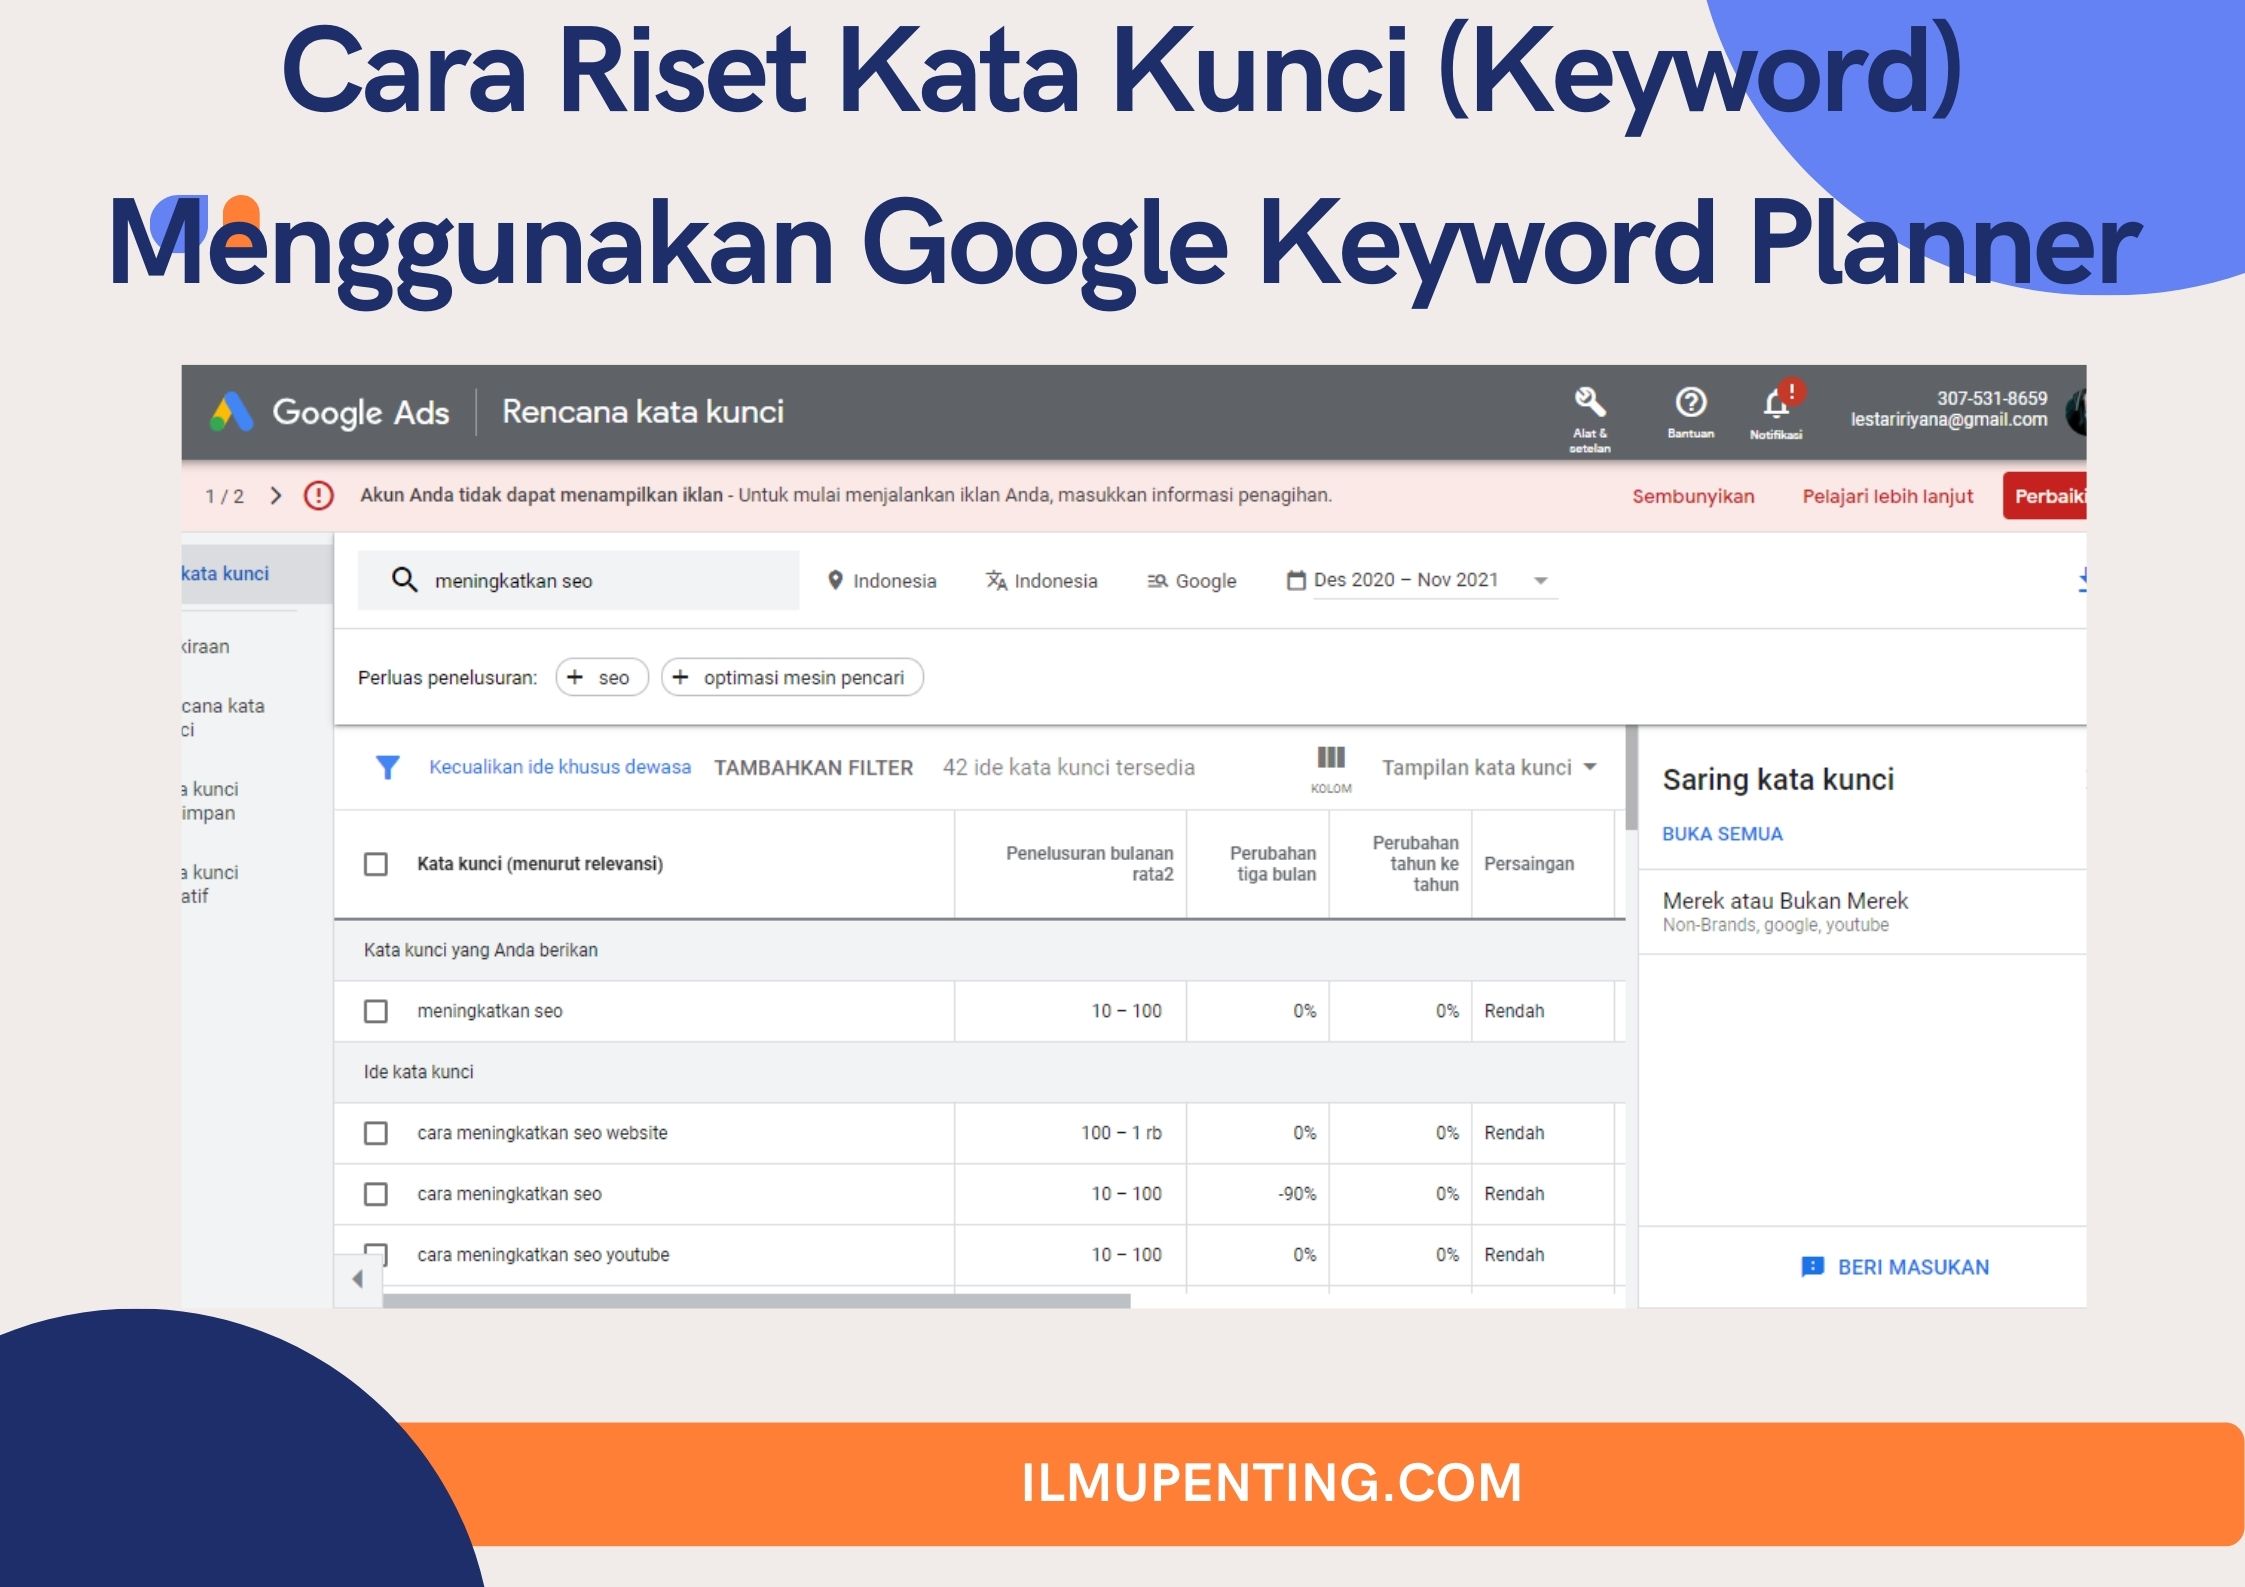 Cara Riset Kata Kunci (Keyword) Menggunakan Google Keyword Planner